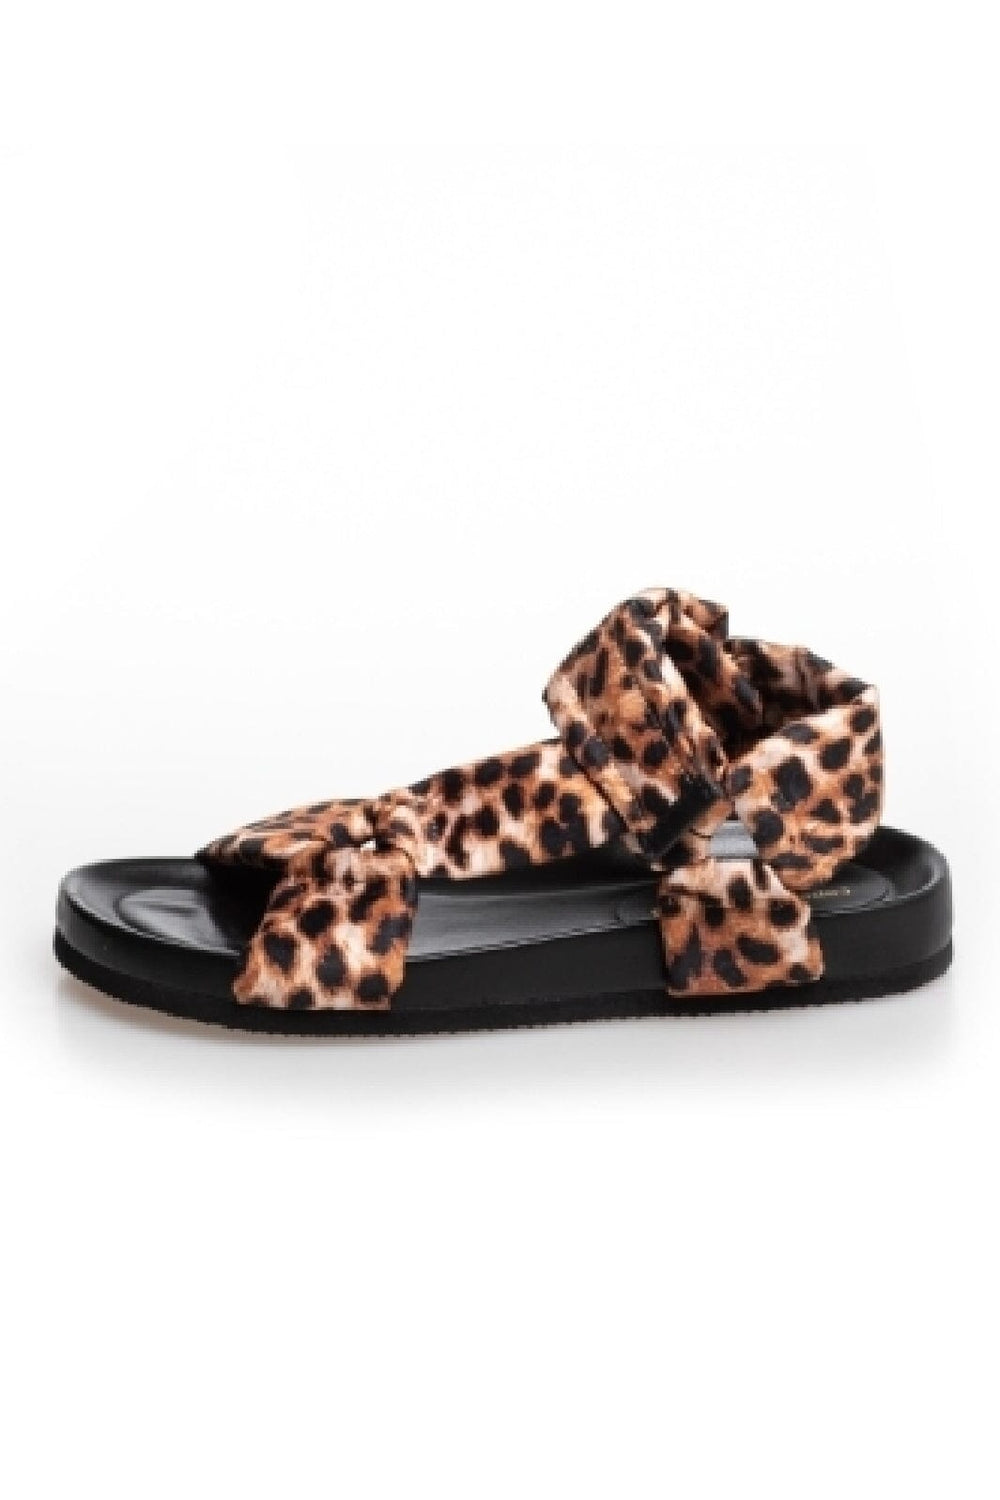 Forudbestilling - Copenhagen Shoes - Carrie - 020 Brown Leopard - (Marts/April) Sandaler 